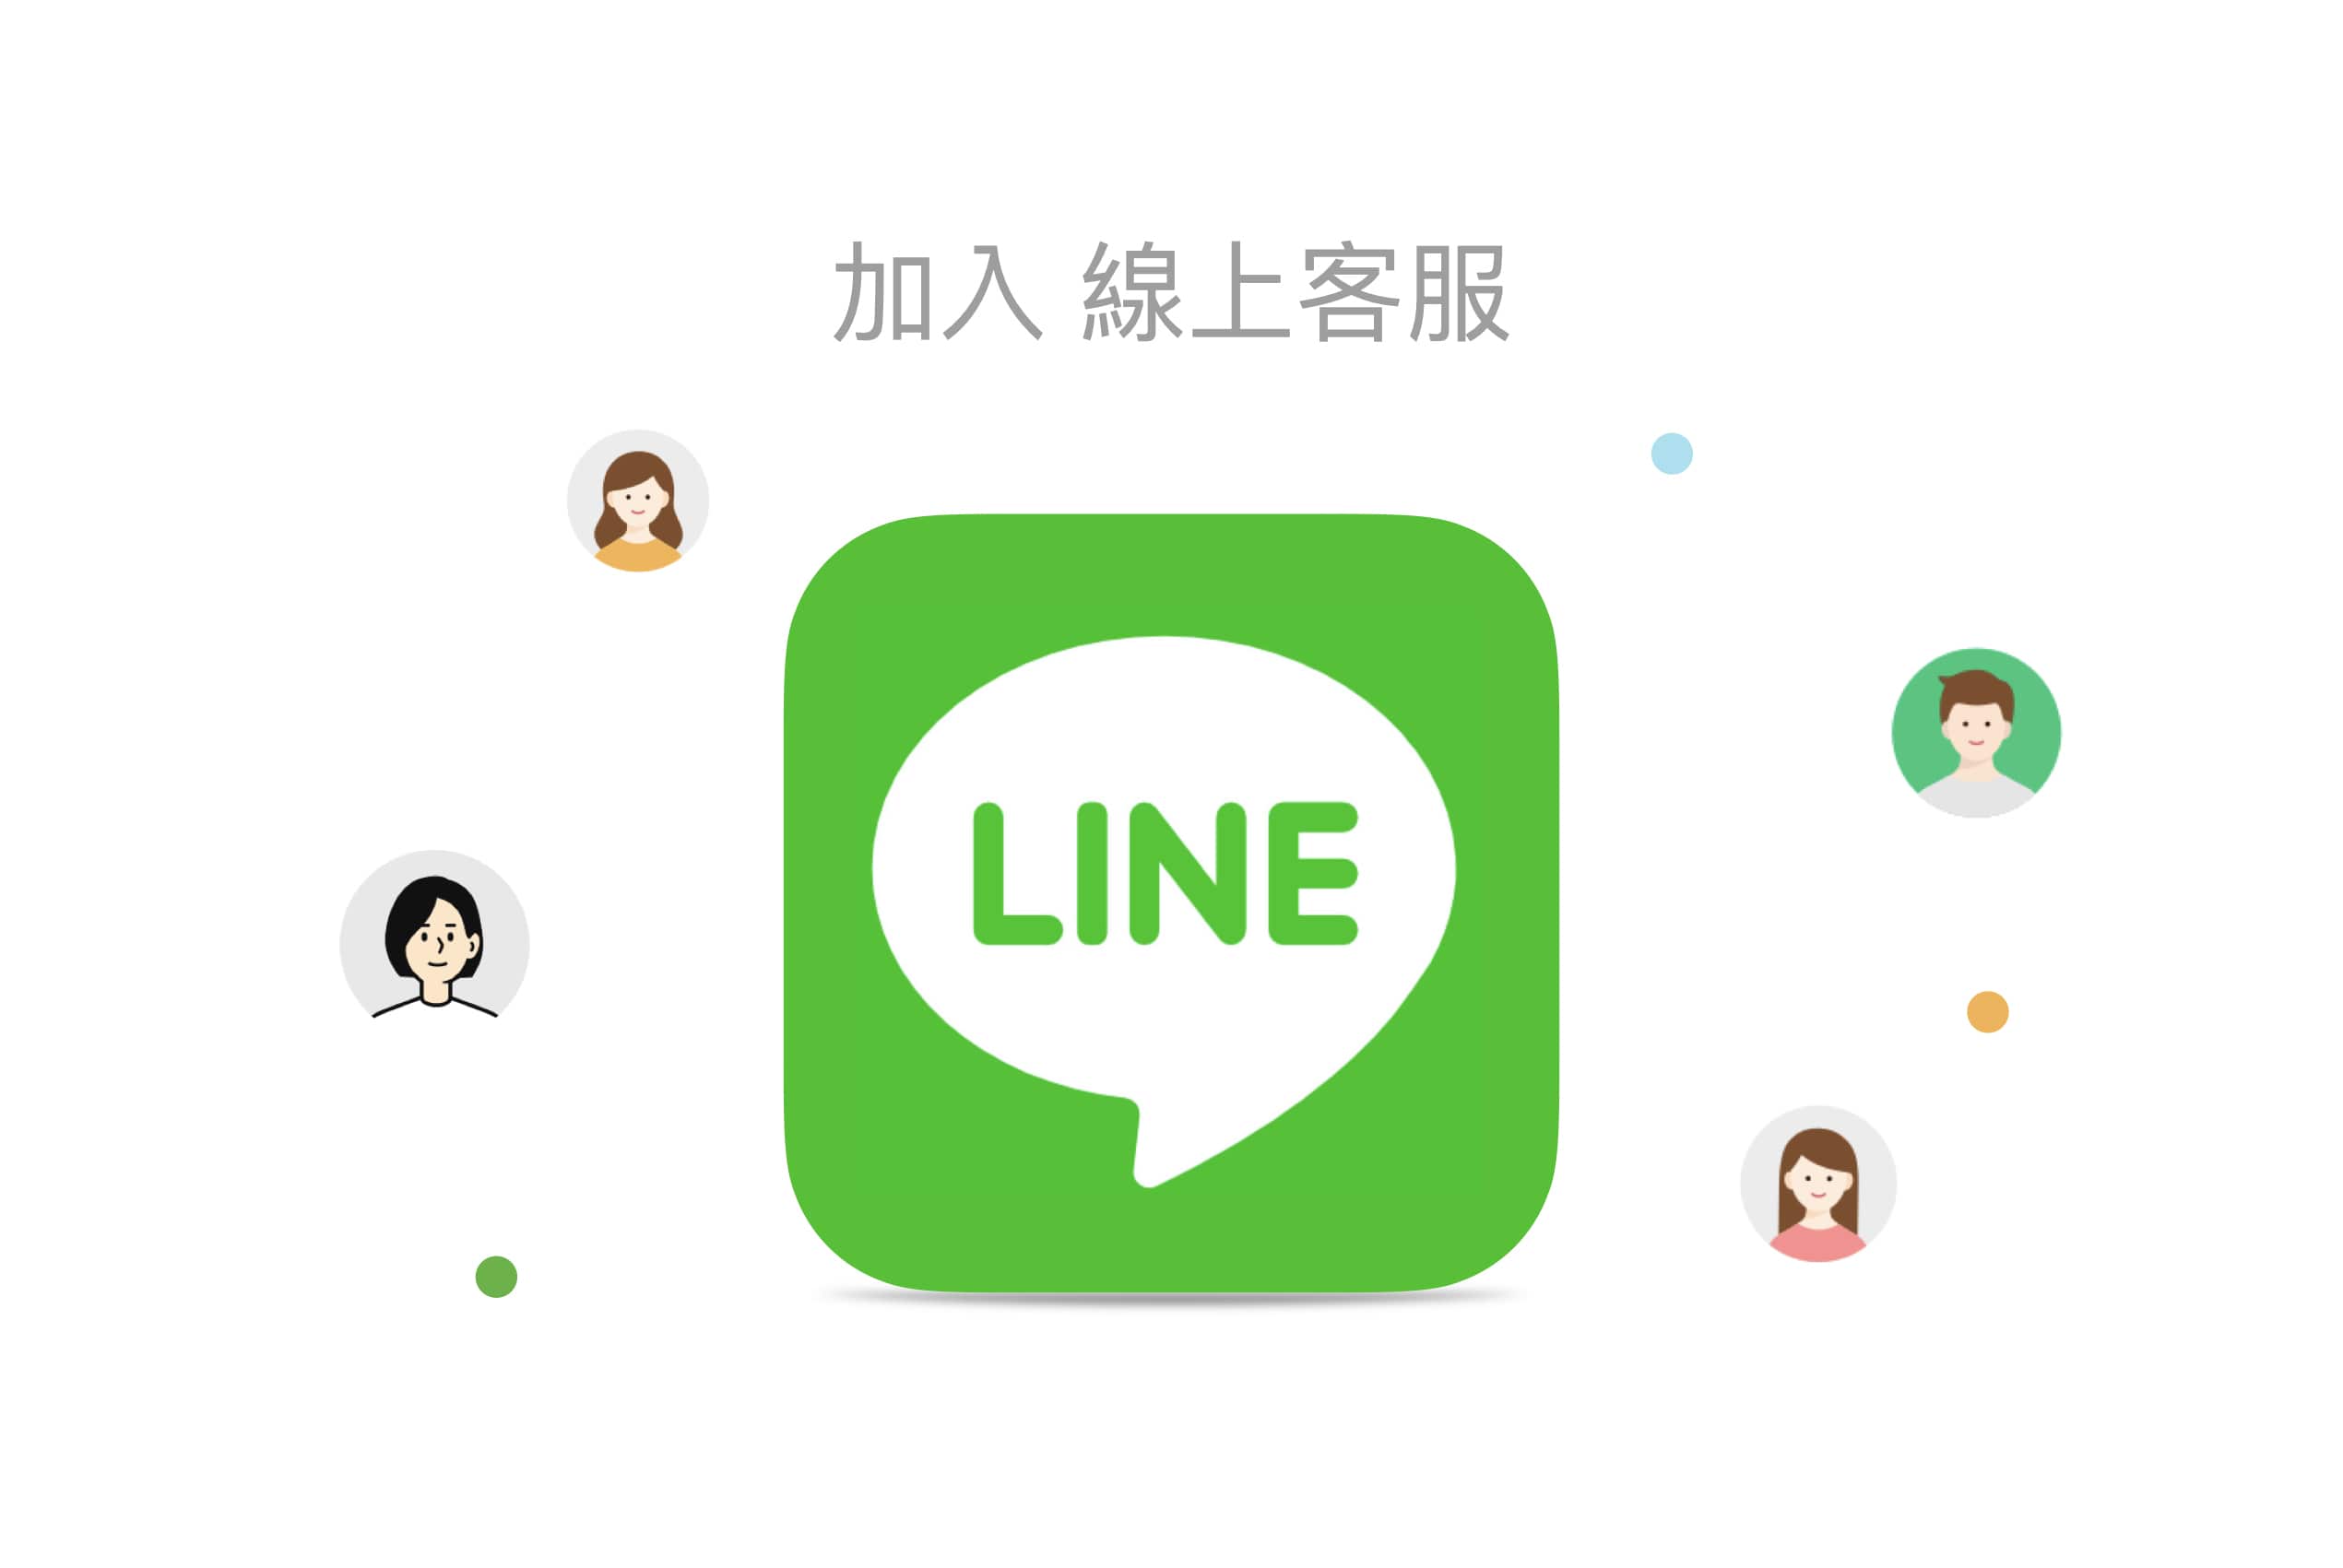 line聯絡客服